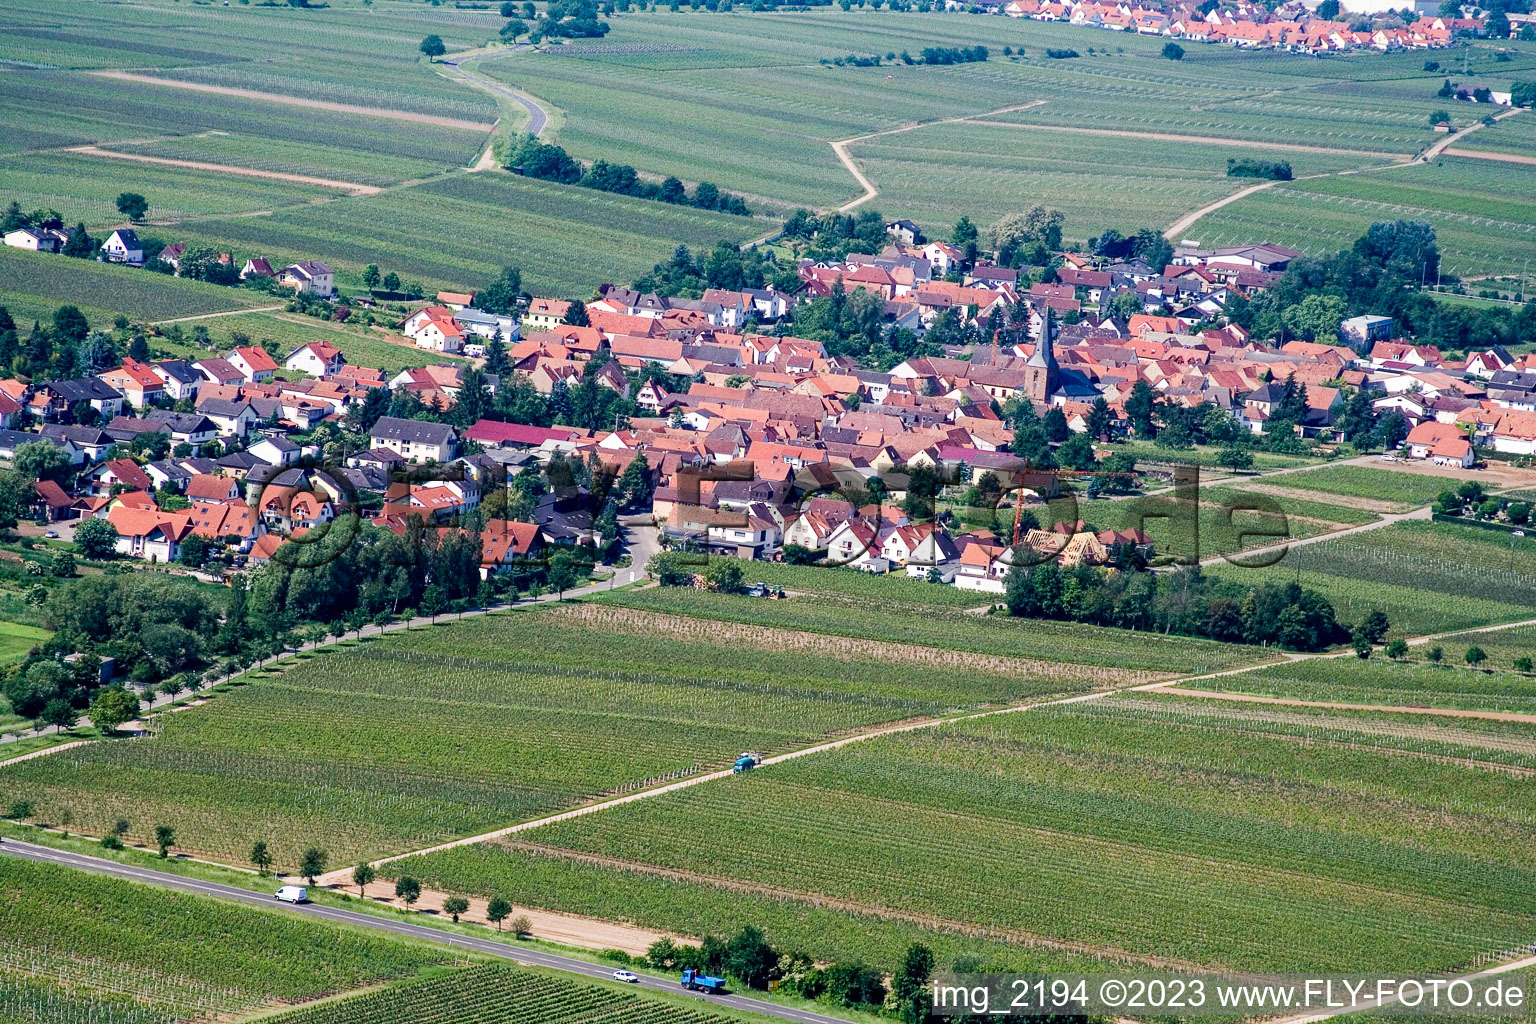 Roschbach dans le département Rhénanie-Palatinat, Allemagne vu d'un drone